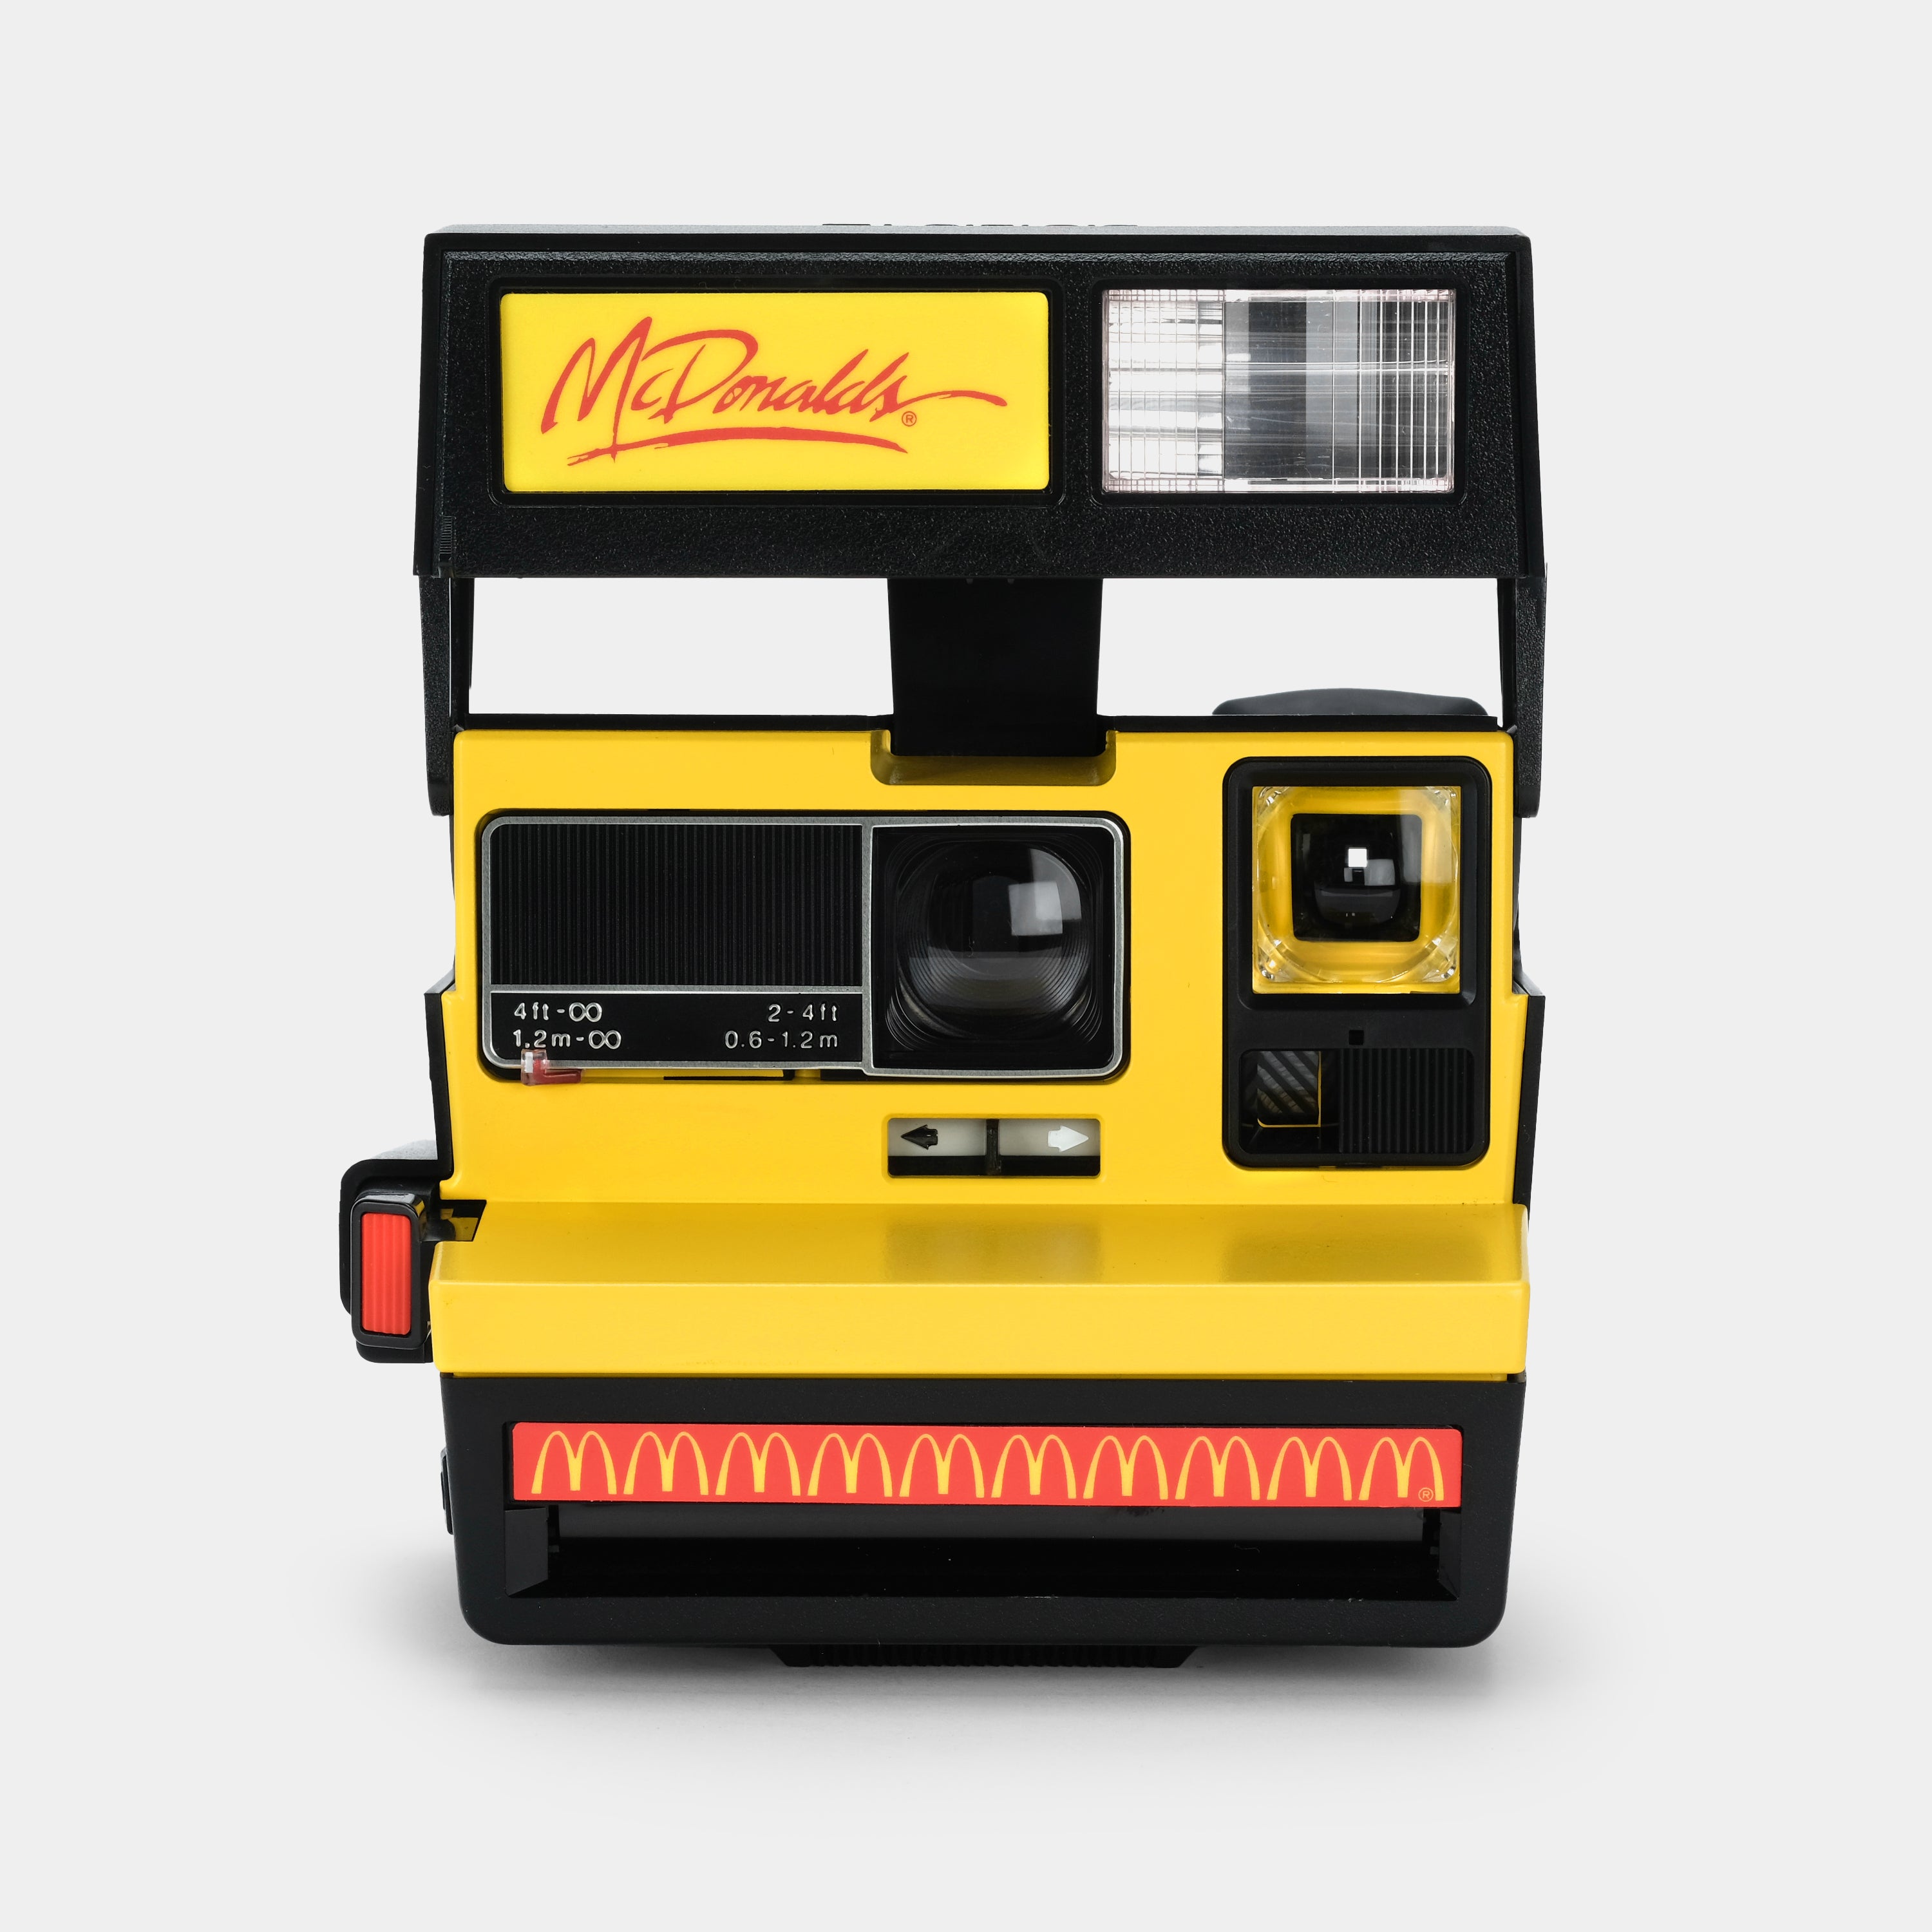 Polaroid 600 McDonald's Instant Film Camera